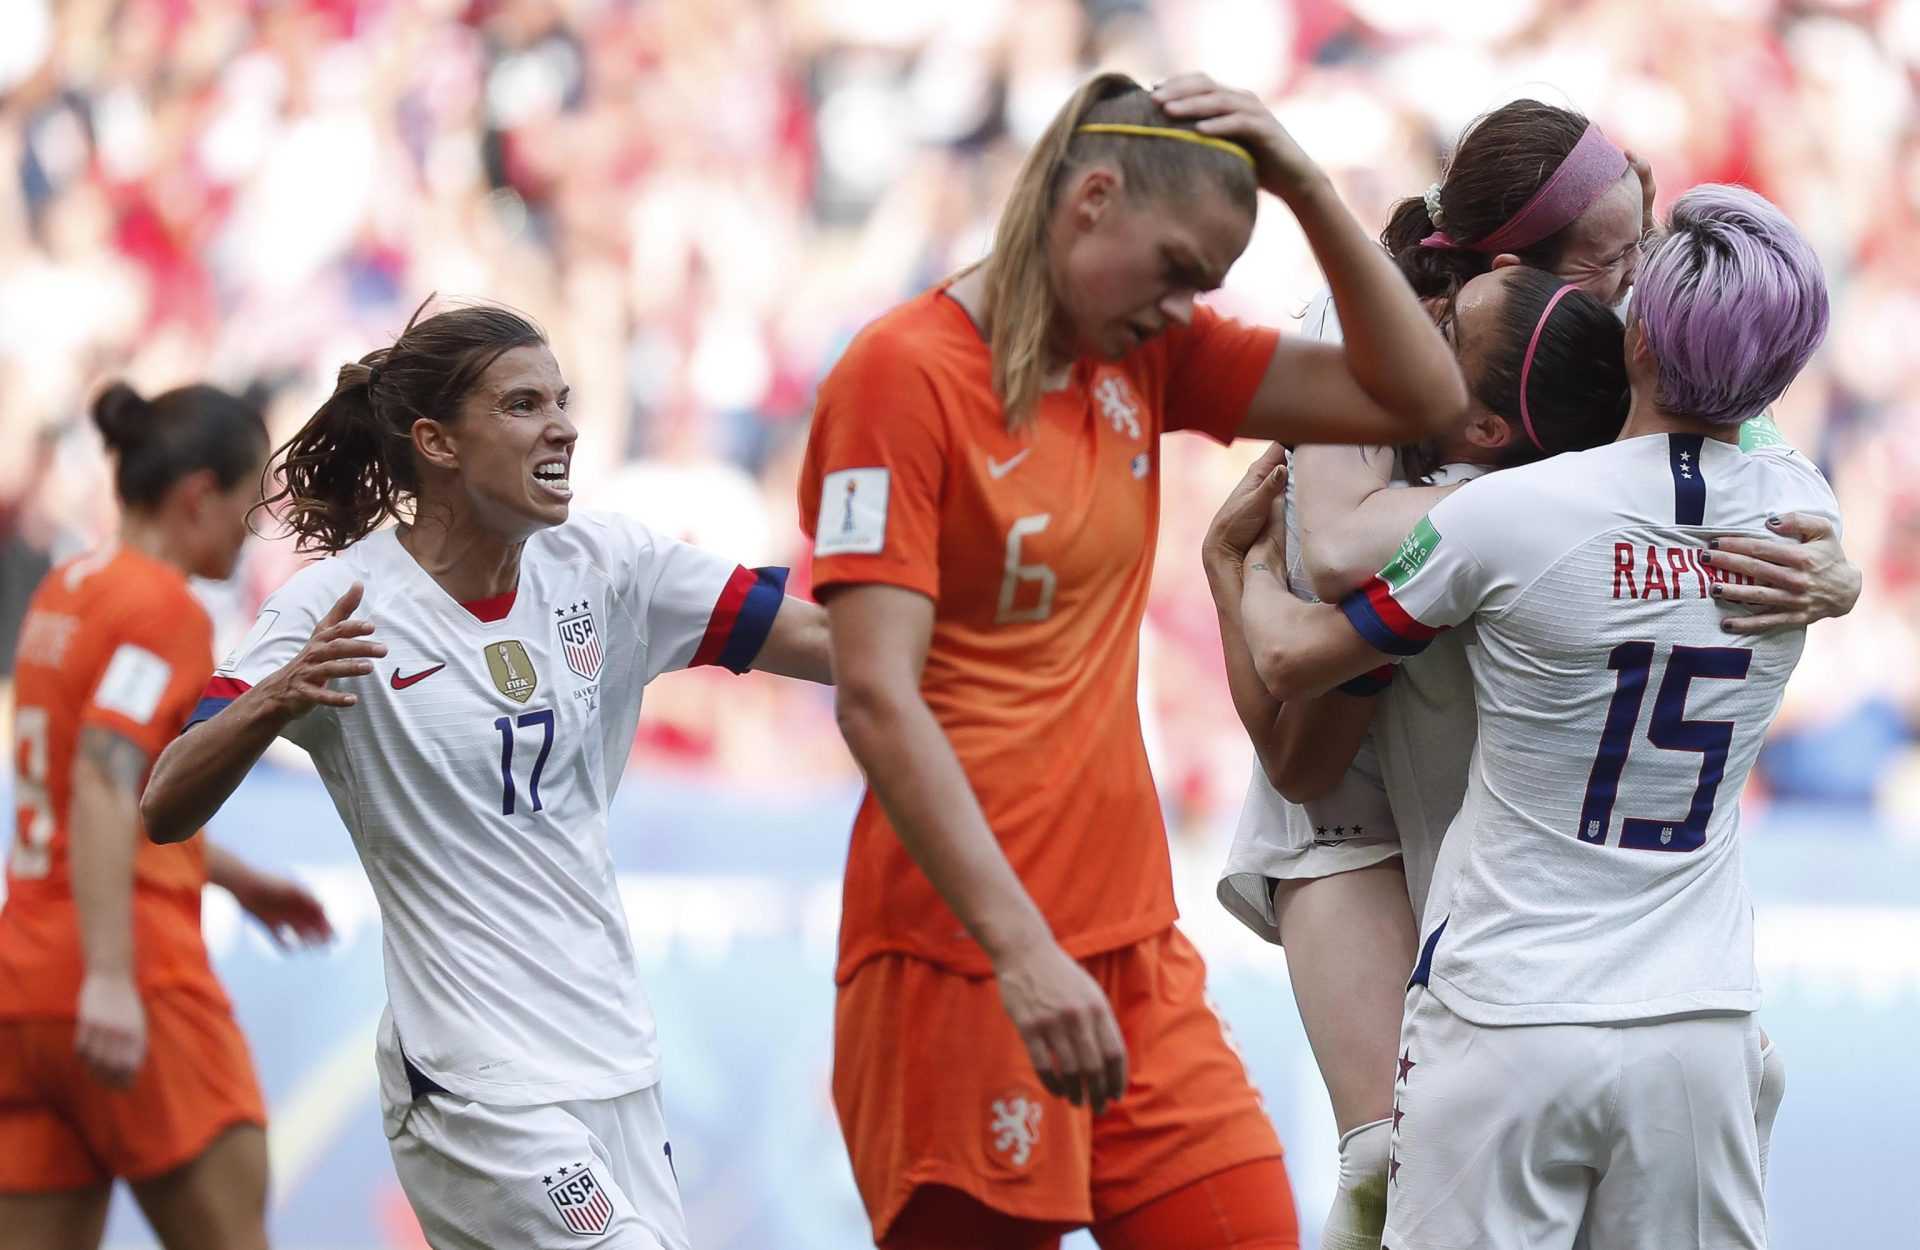 Olimpiadi calcio femminile: big match Olanda-USA ai quarti